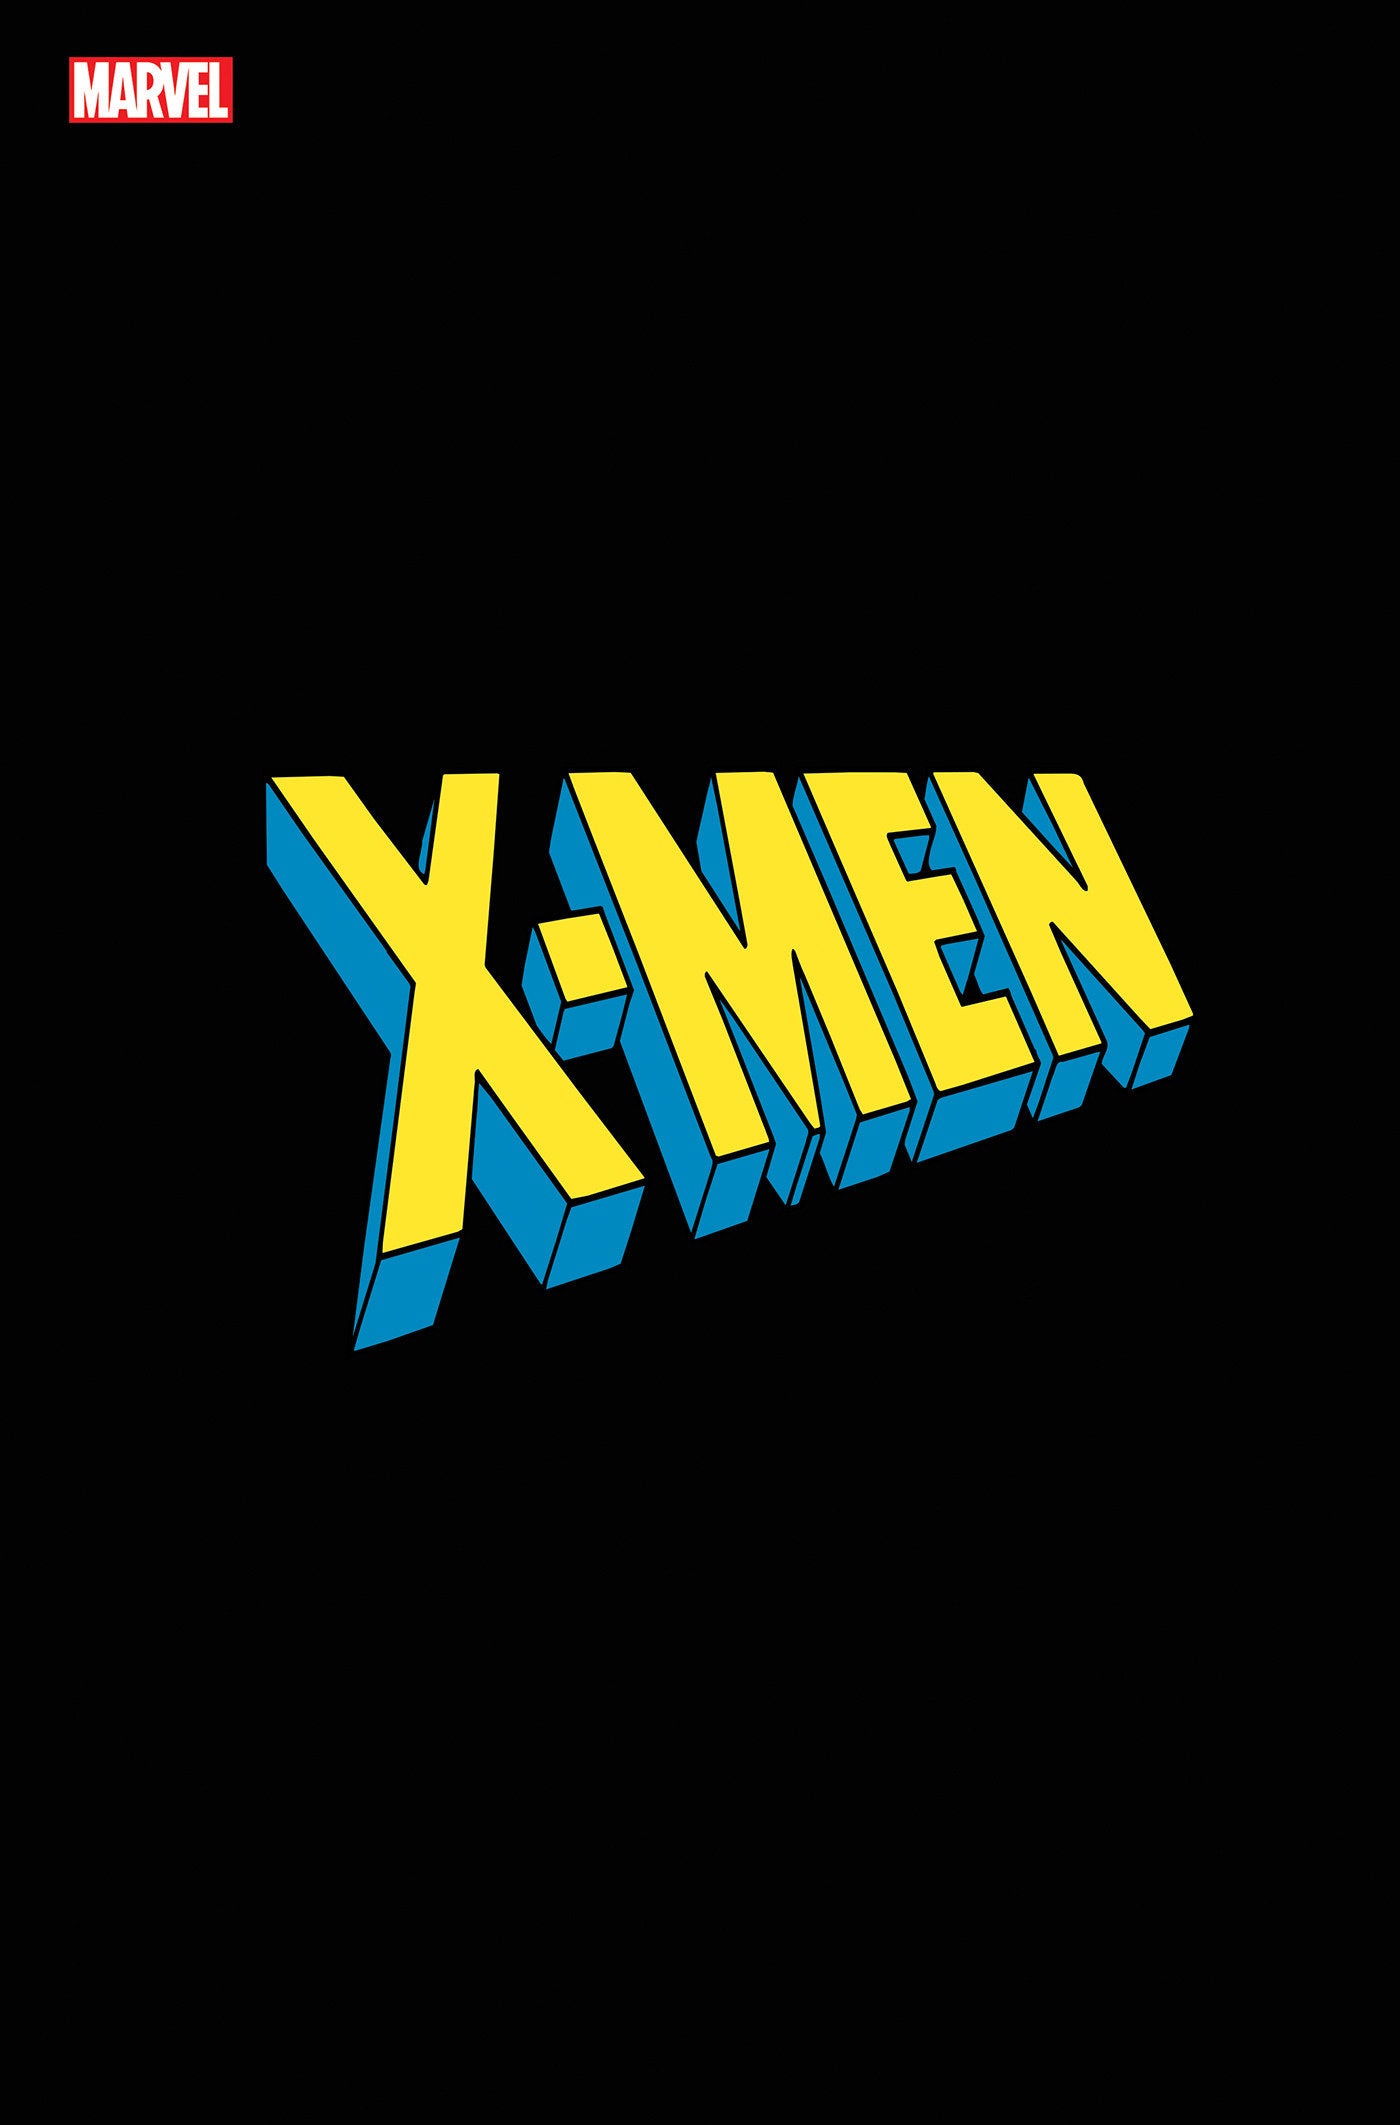 X-MEN #1 LOGO VAR (10 Jul Release)